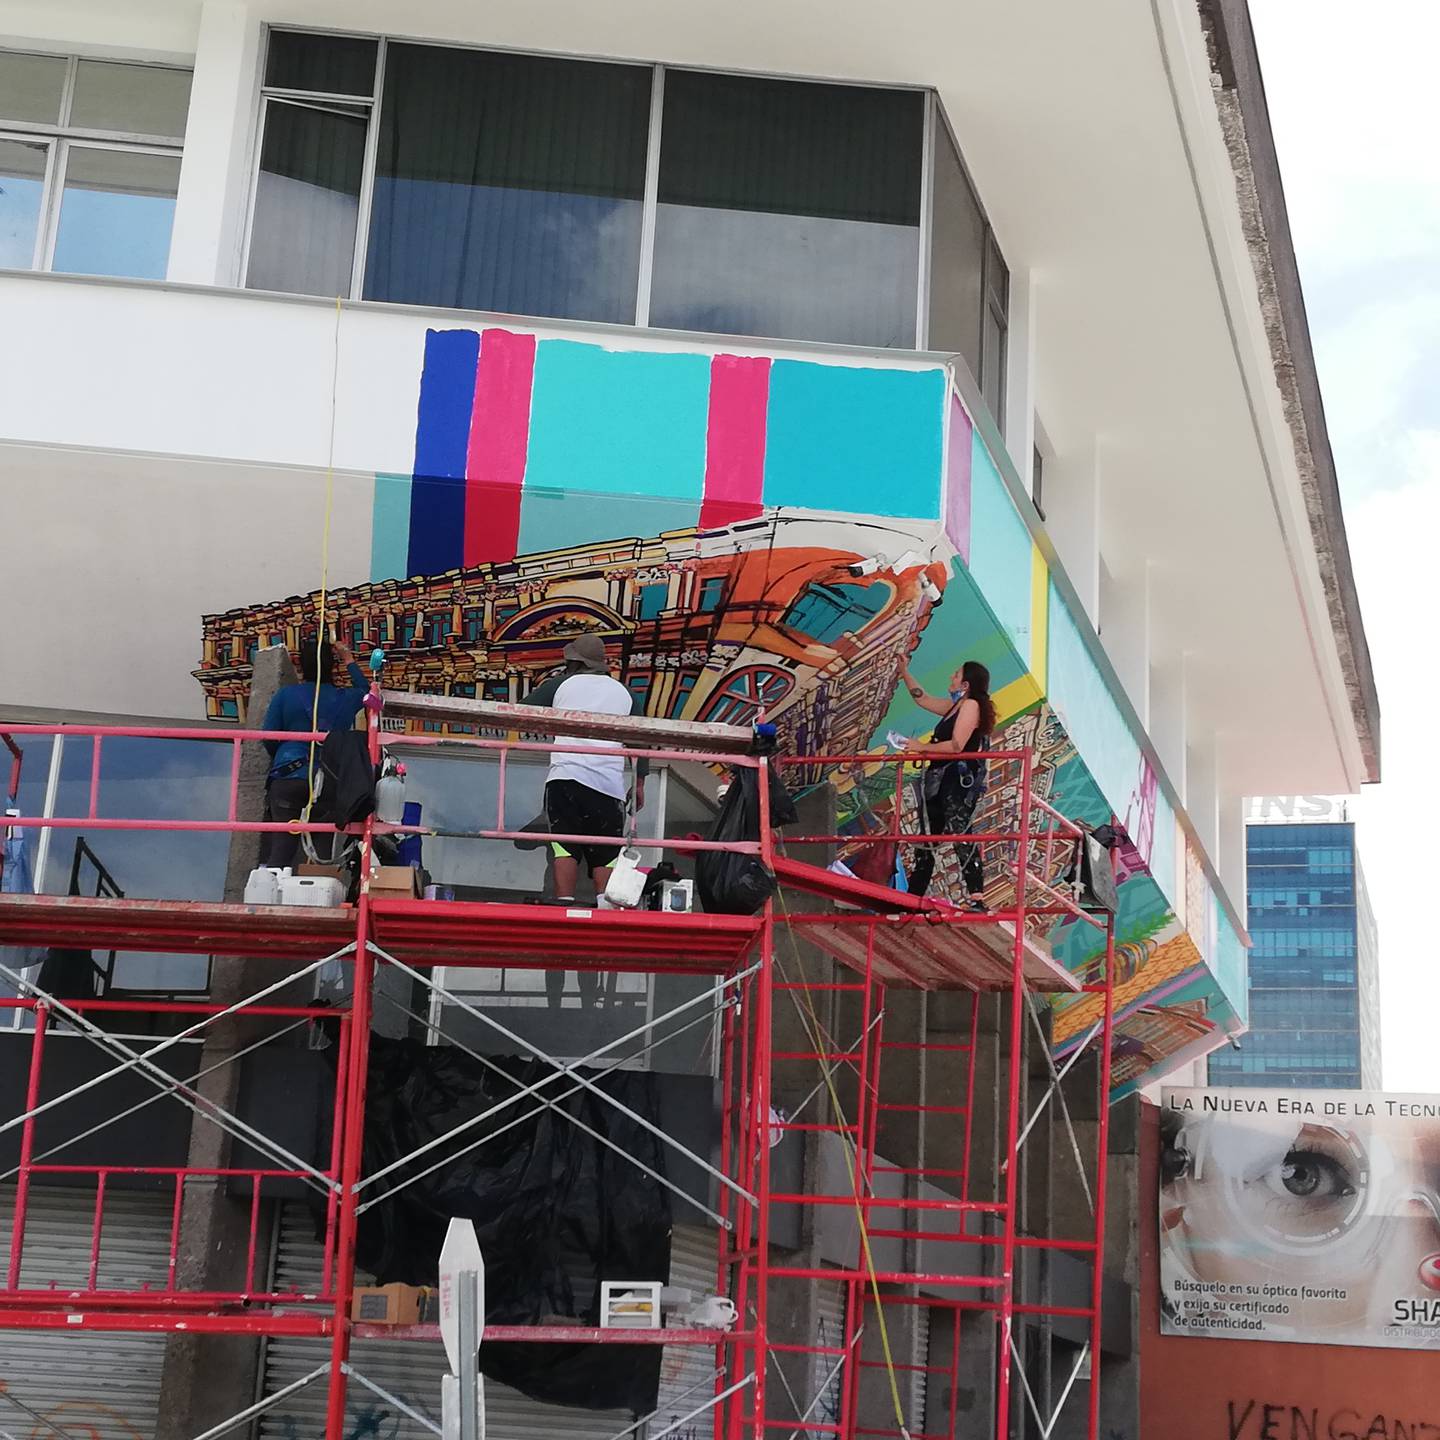 La artista costarricense, Carolina Rodríguez Herrera, está encargada de pintar lo mejor del San José de ayer y hoy en las paredes de la fachada del edificio Teresa que se ubica en barrio Amón. Le ayuda en la obra otra artista tica, Laura Chevez.